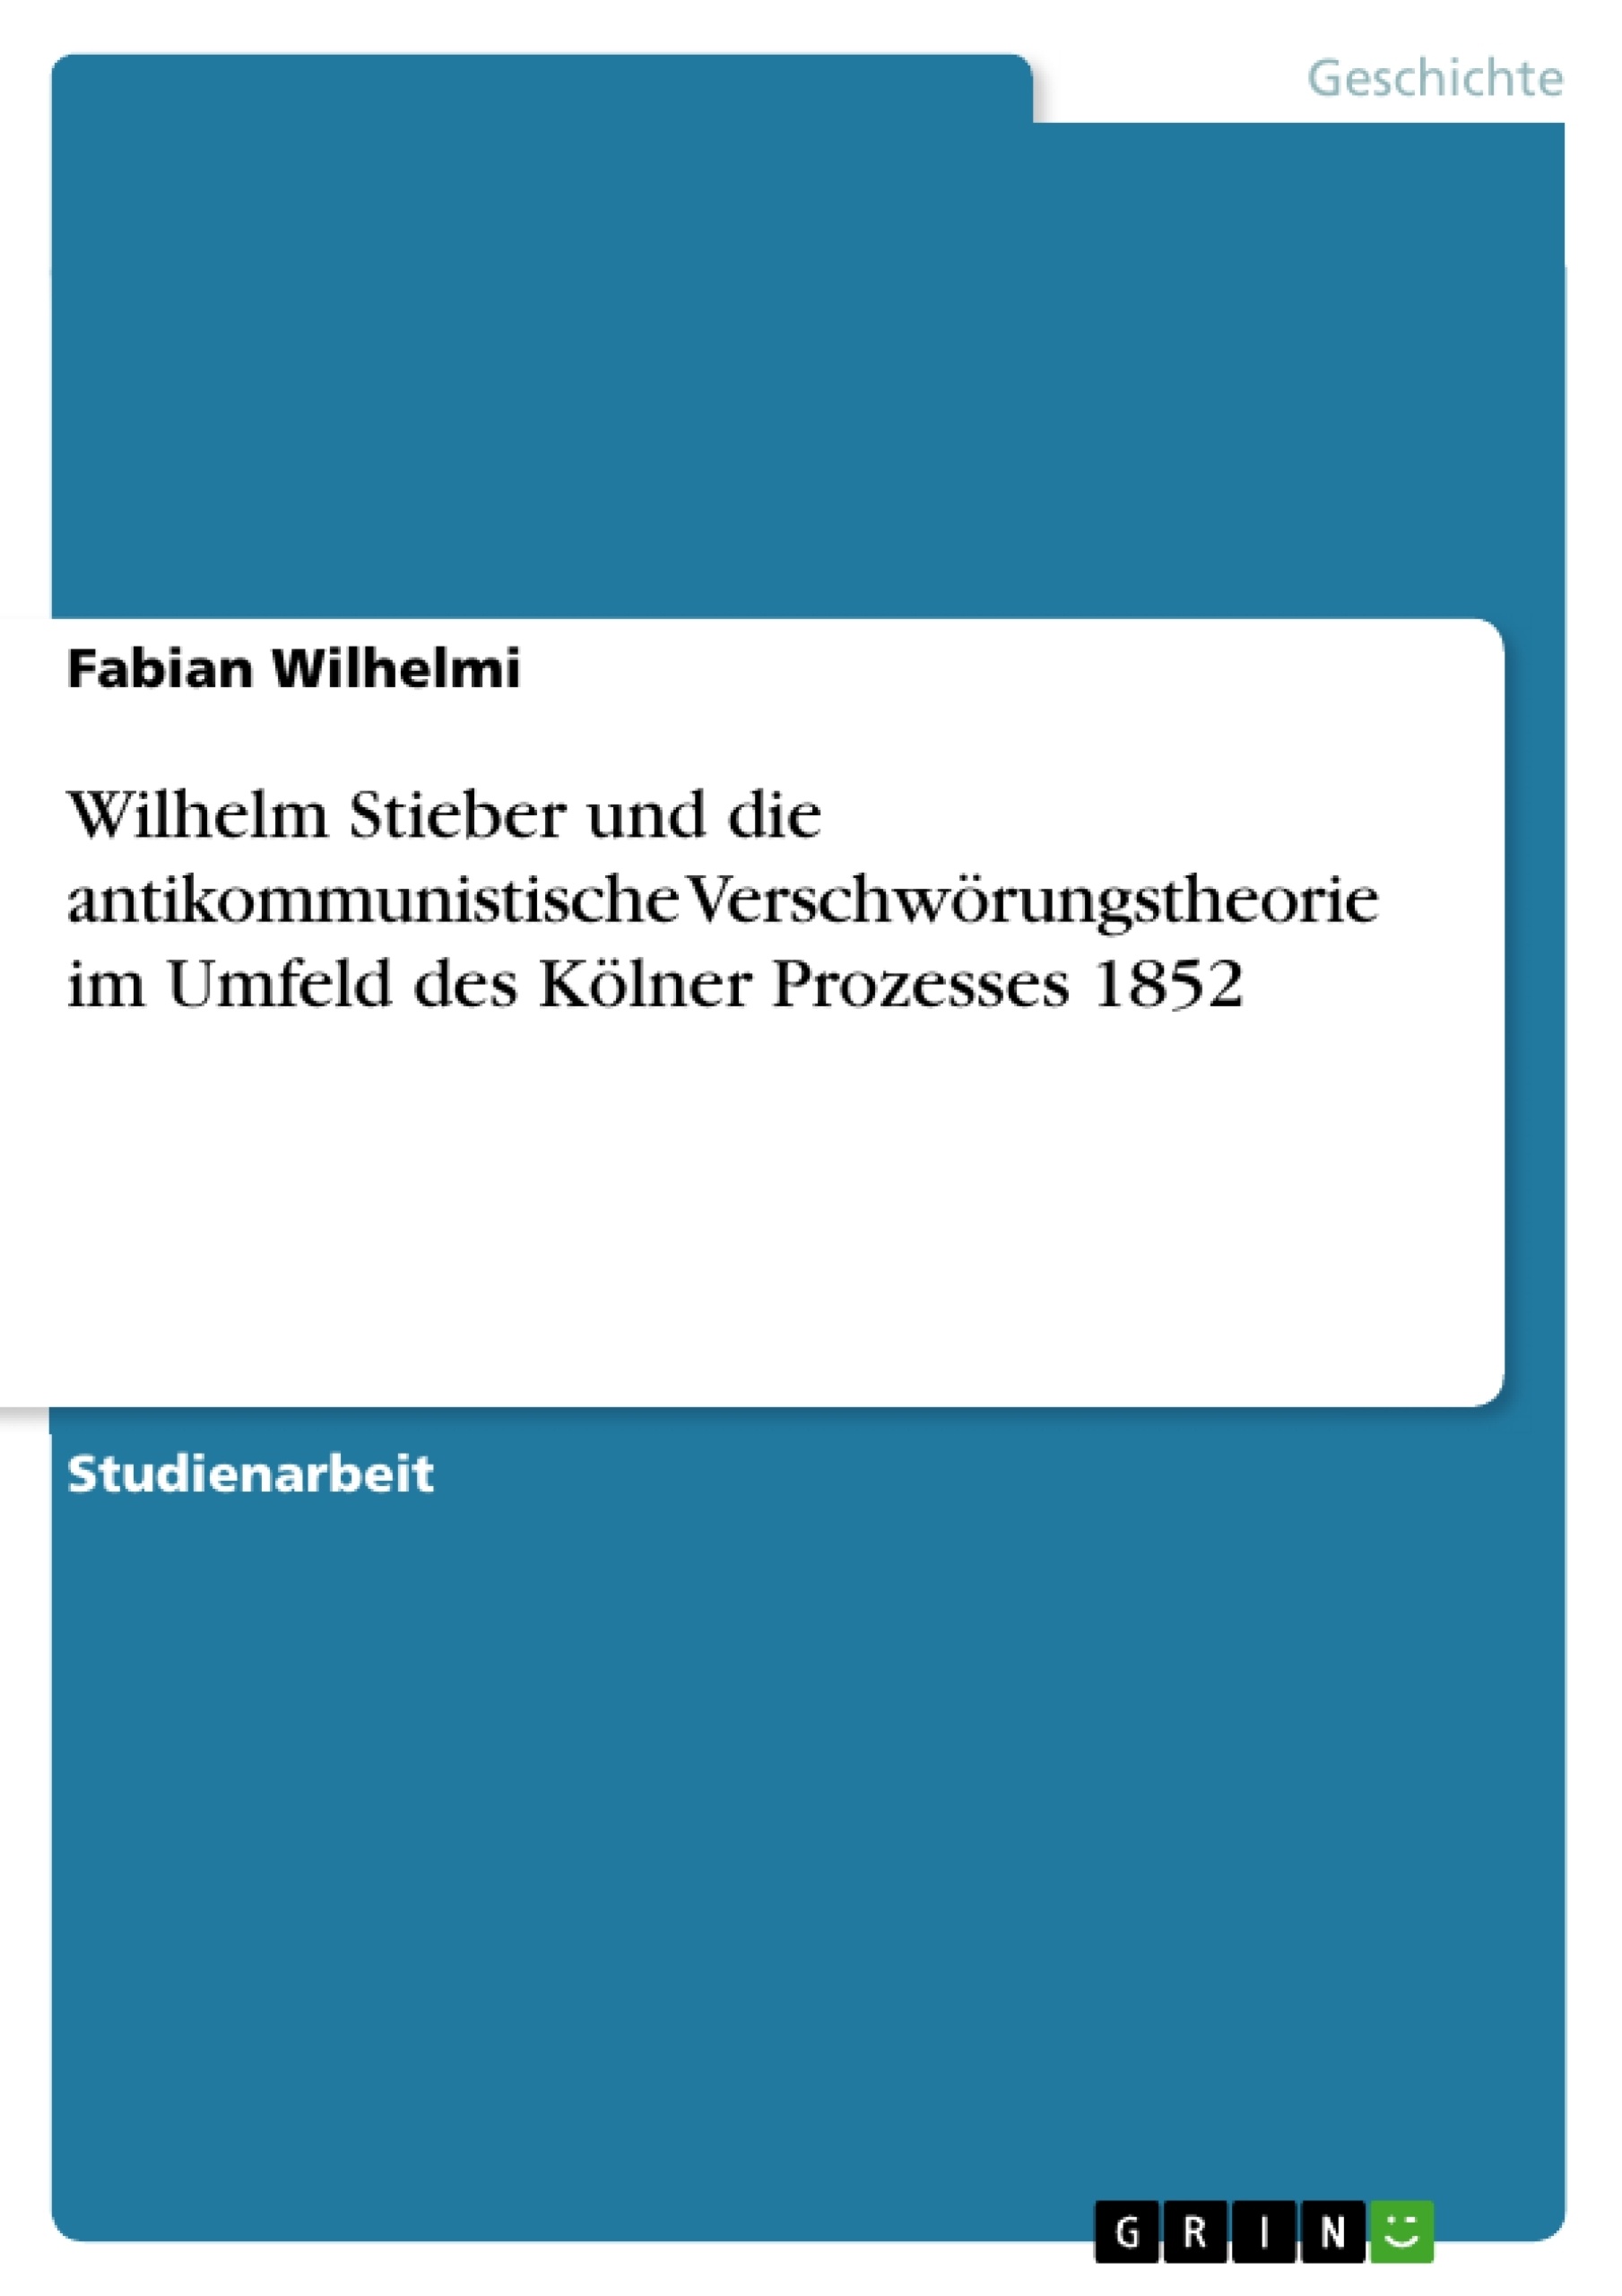 Titel: Wilhelm Stieber und die antikommunistische Verschwörungstheorie im Umfeld des Kölner Prozesses 1852